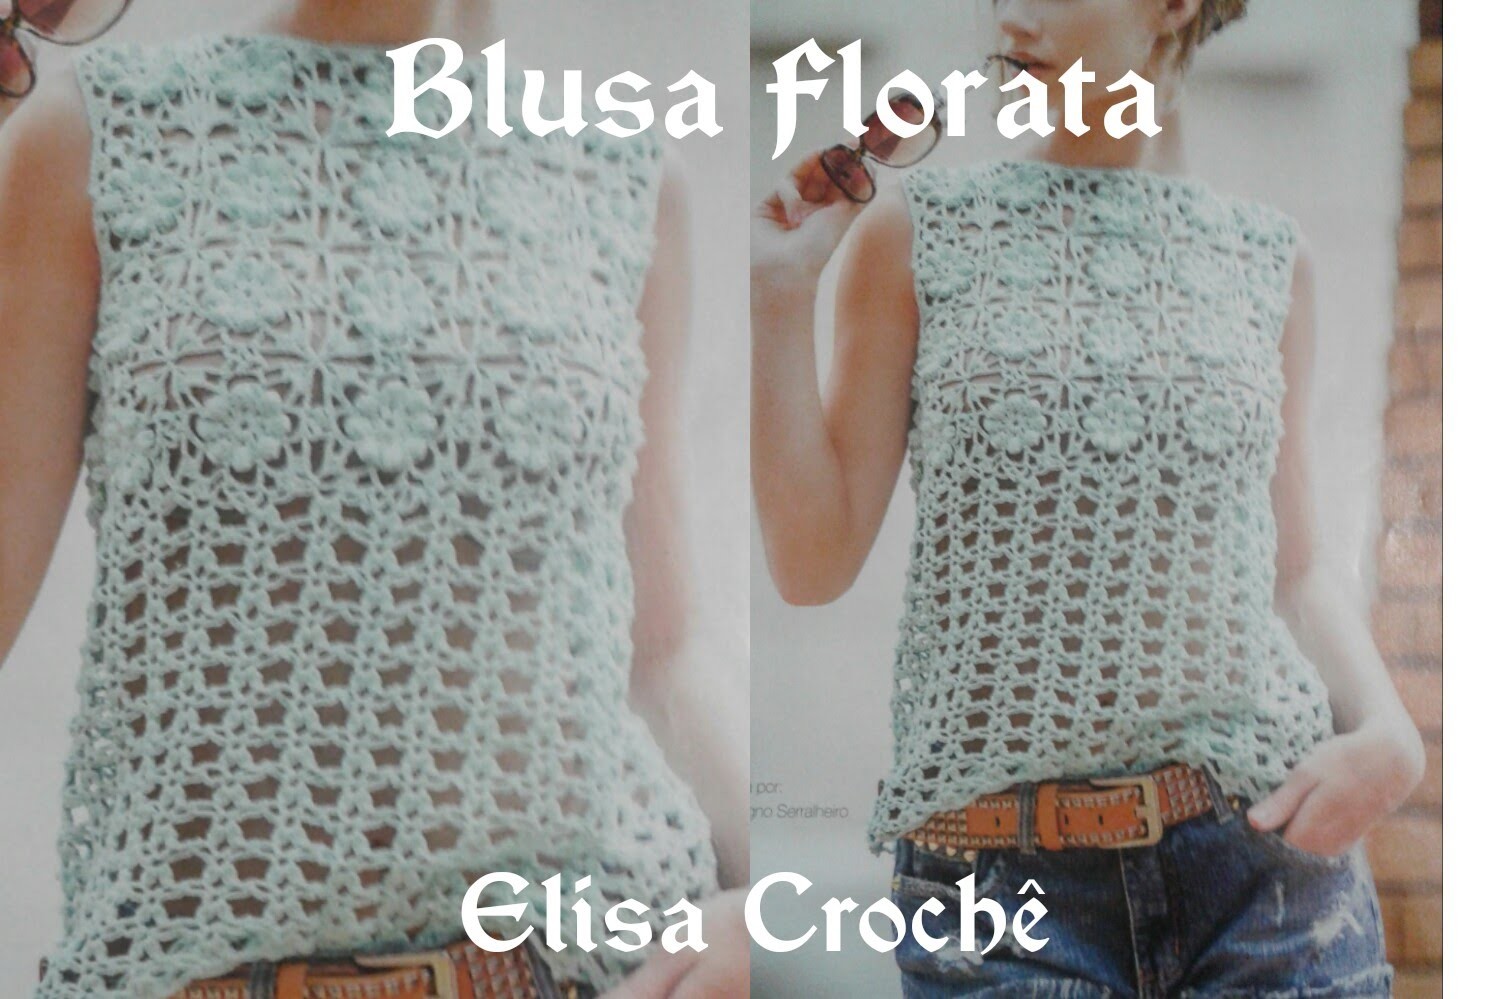 Versão destros: Blusa florata   em Crochê  (explicação) # Elisa Crochê